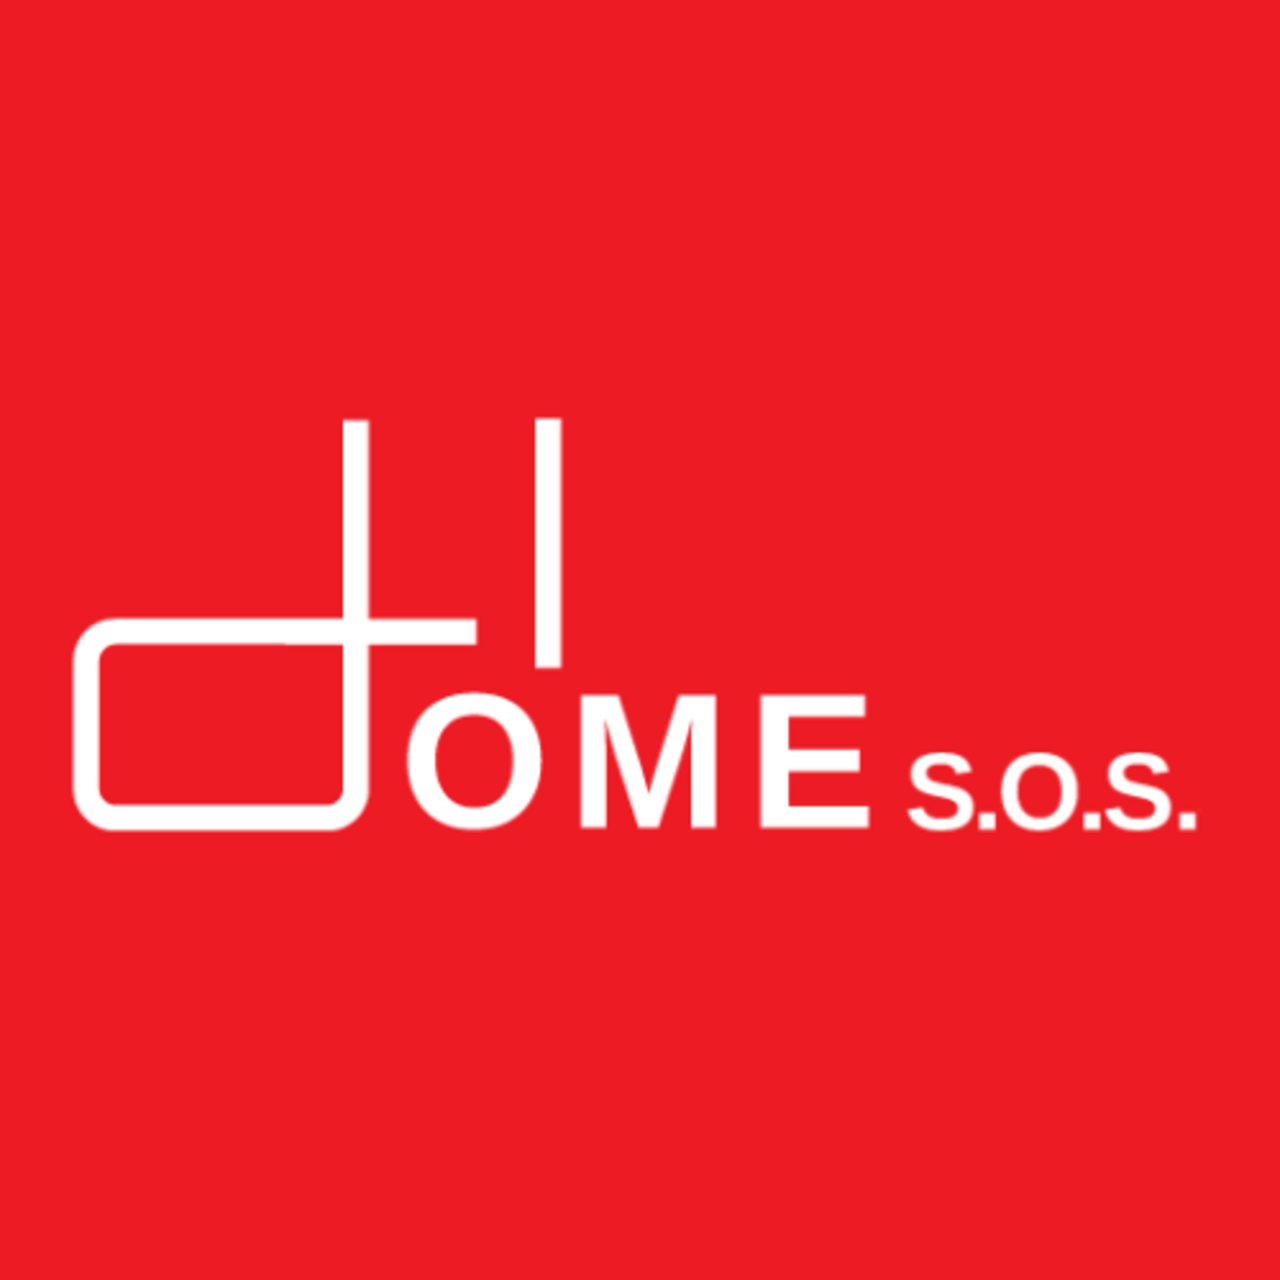 HOME s.o.s.'s logo